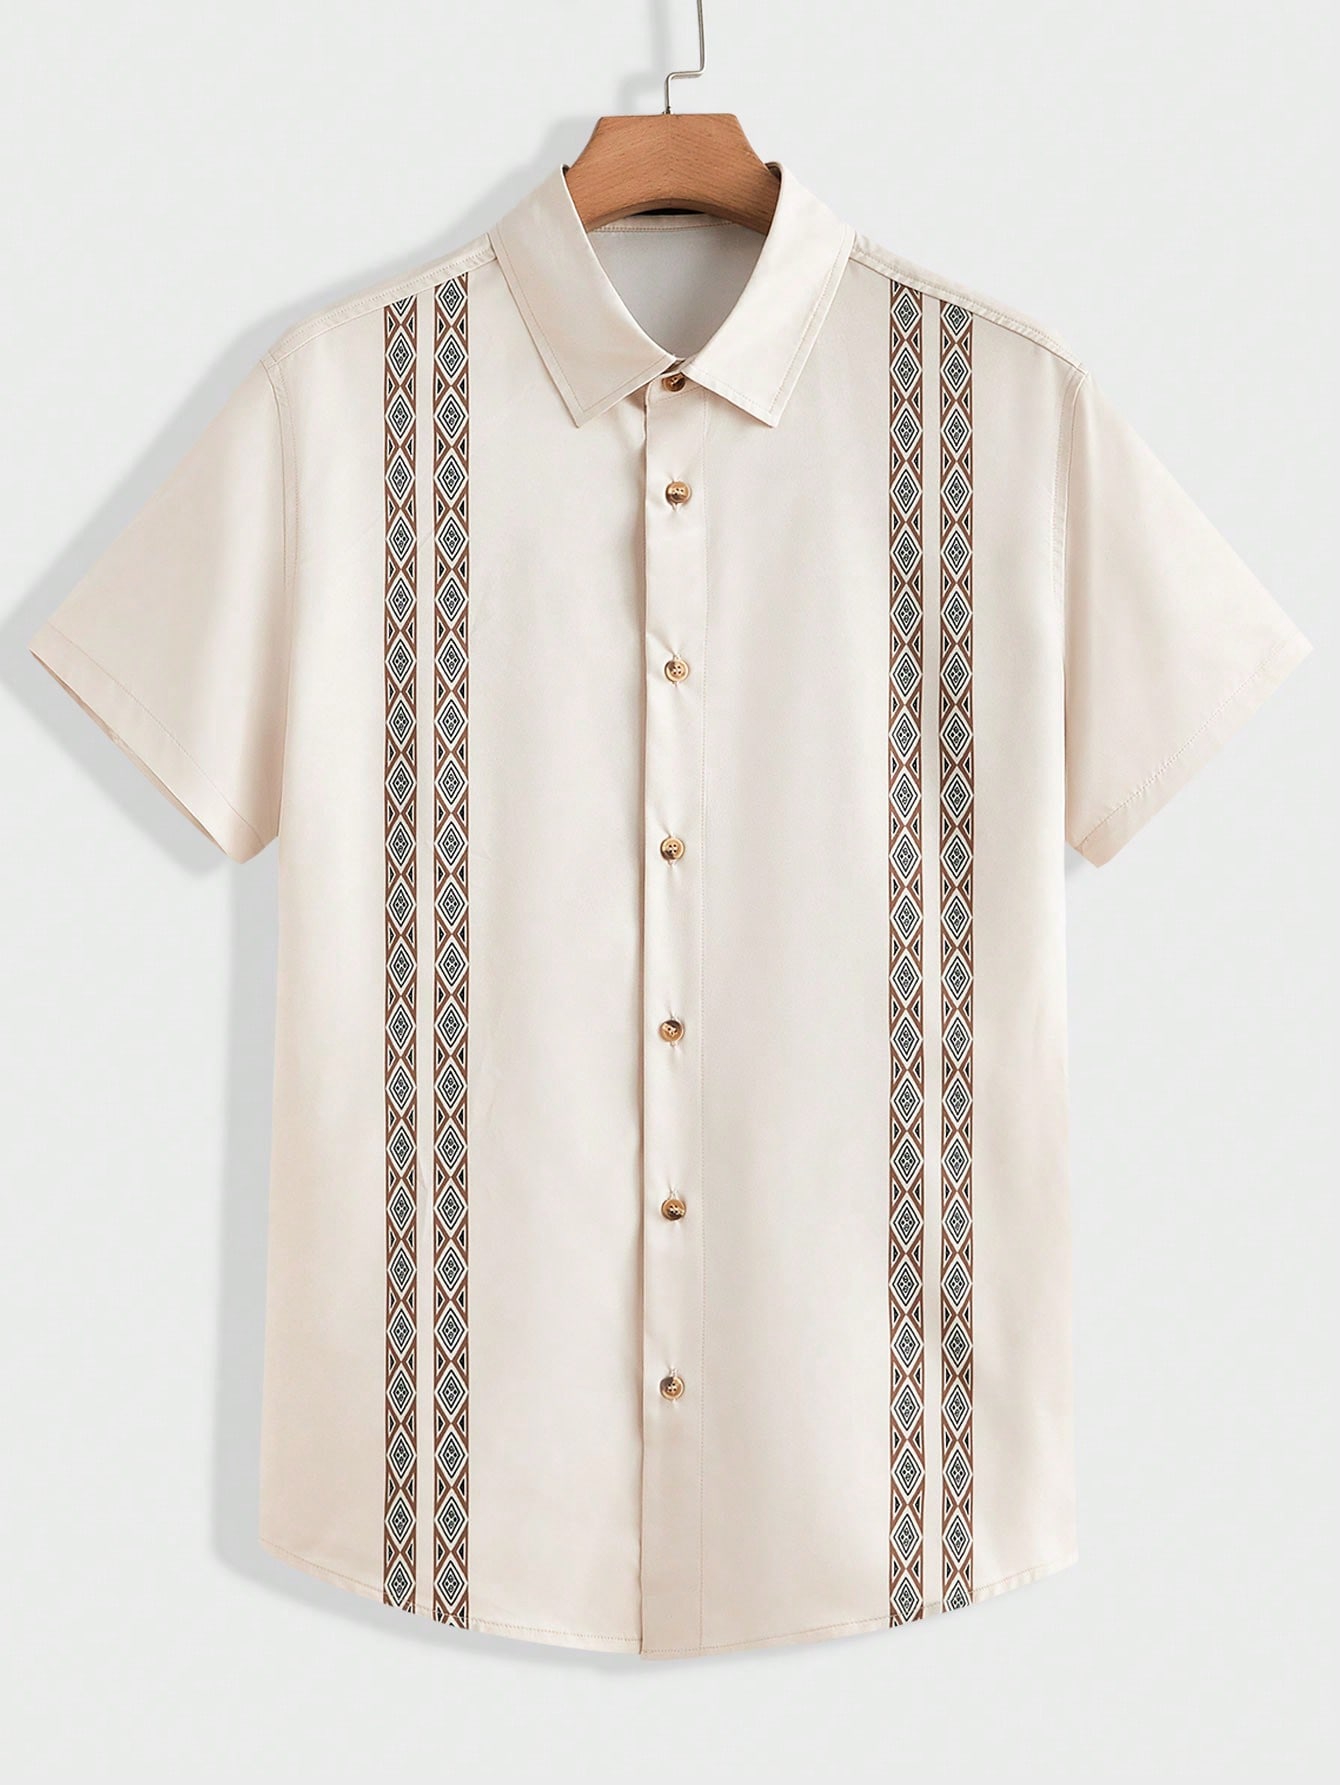 Мужская рубашка на пуговицах с короткими рукавами Manfinity LEGND с геометрическим принтом, белый